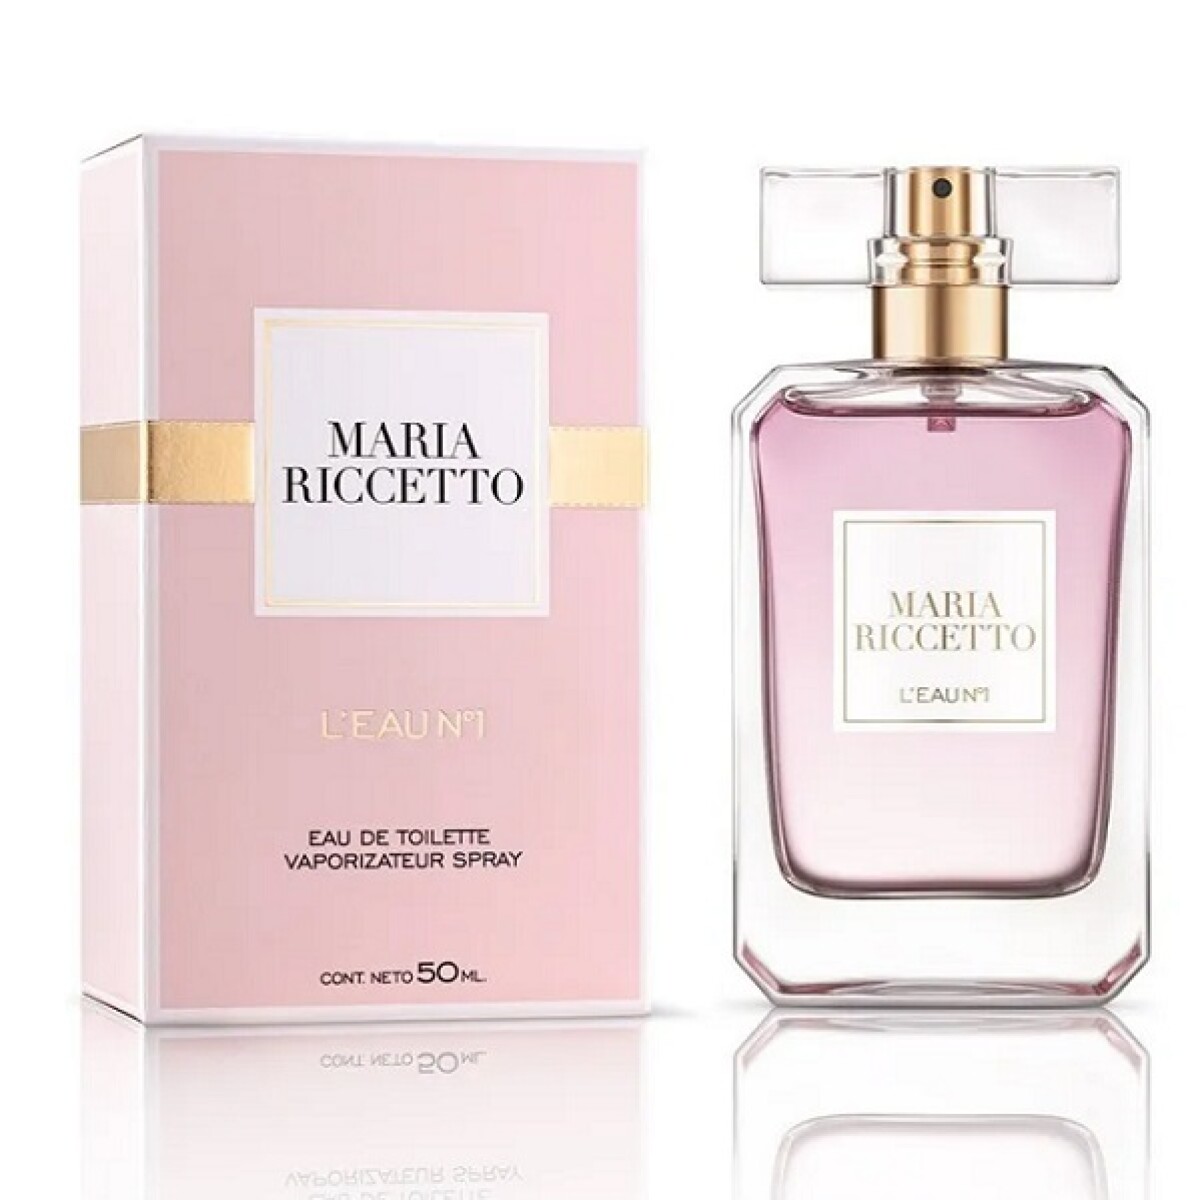 Perfume Maria Riccetto L'eau N°1 Edt 50 Ml. 